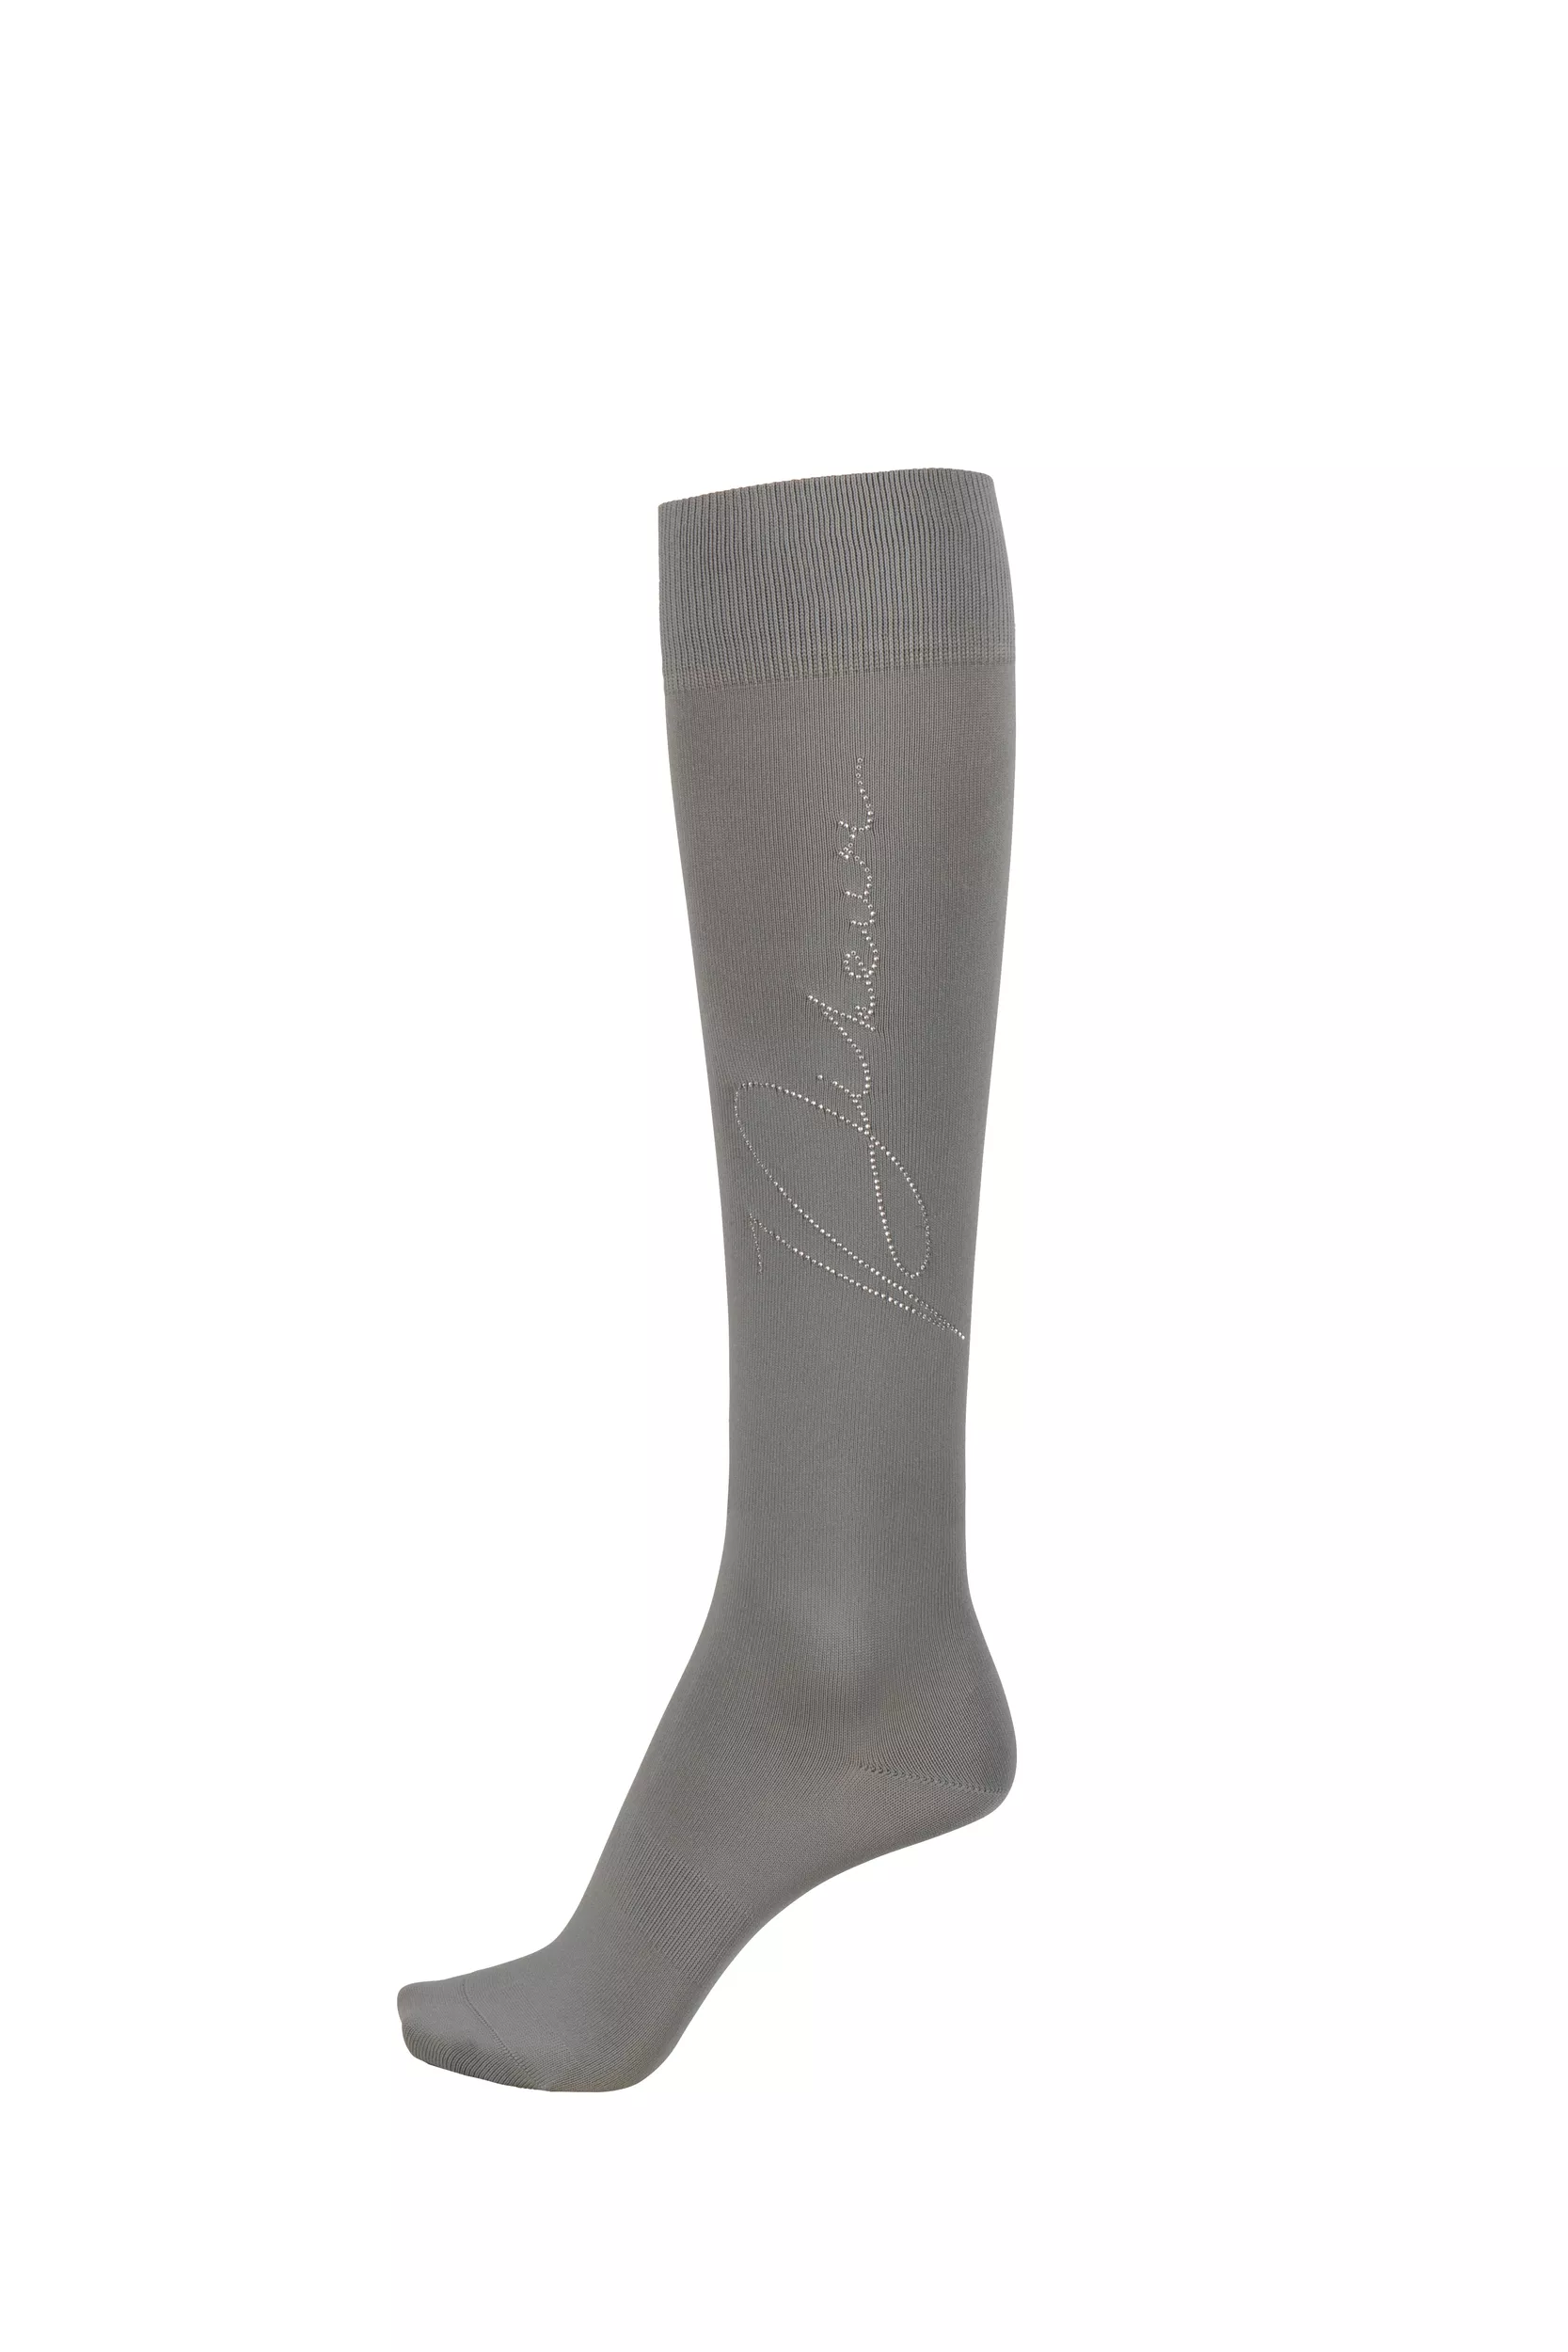 Calcetines de equitación KNIE-STRUMPF con Rhinestuds, gris claro / gris claro